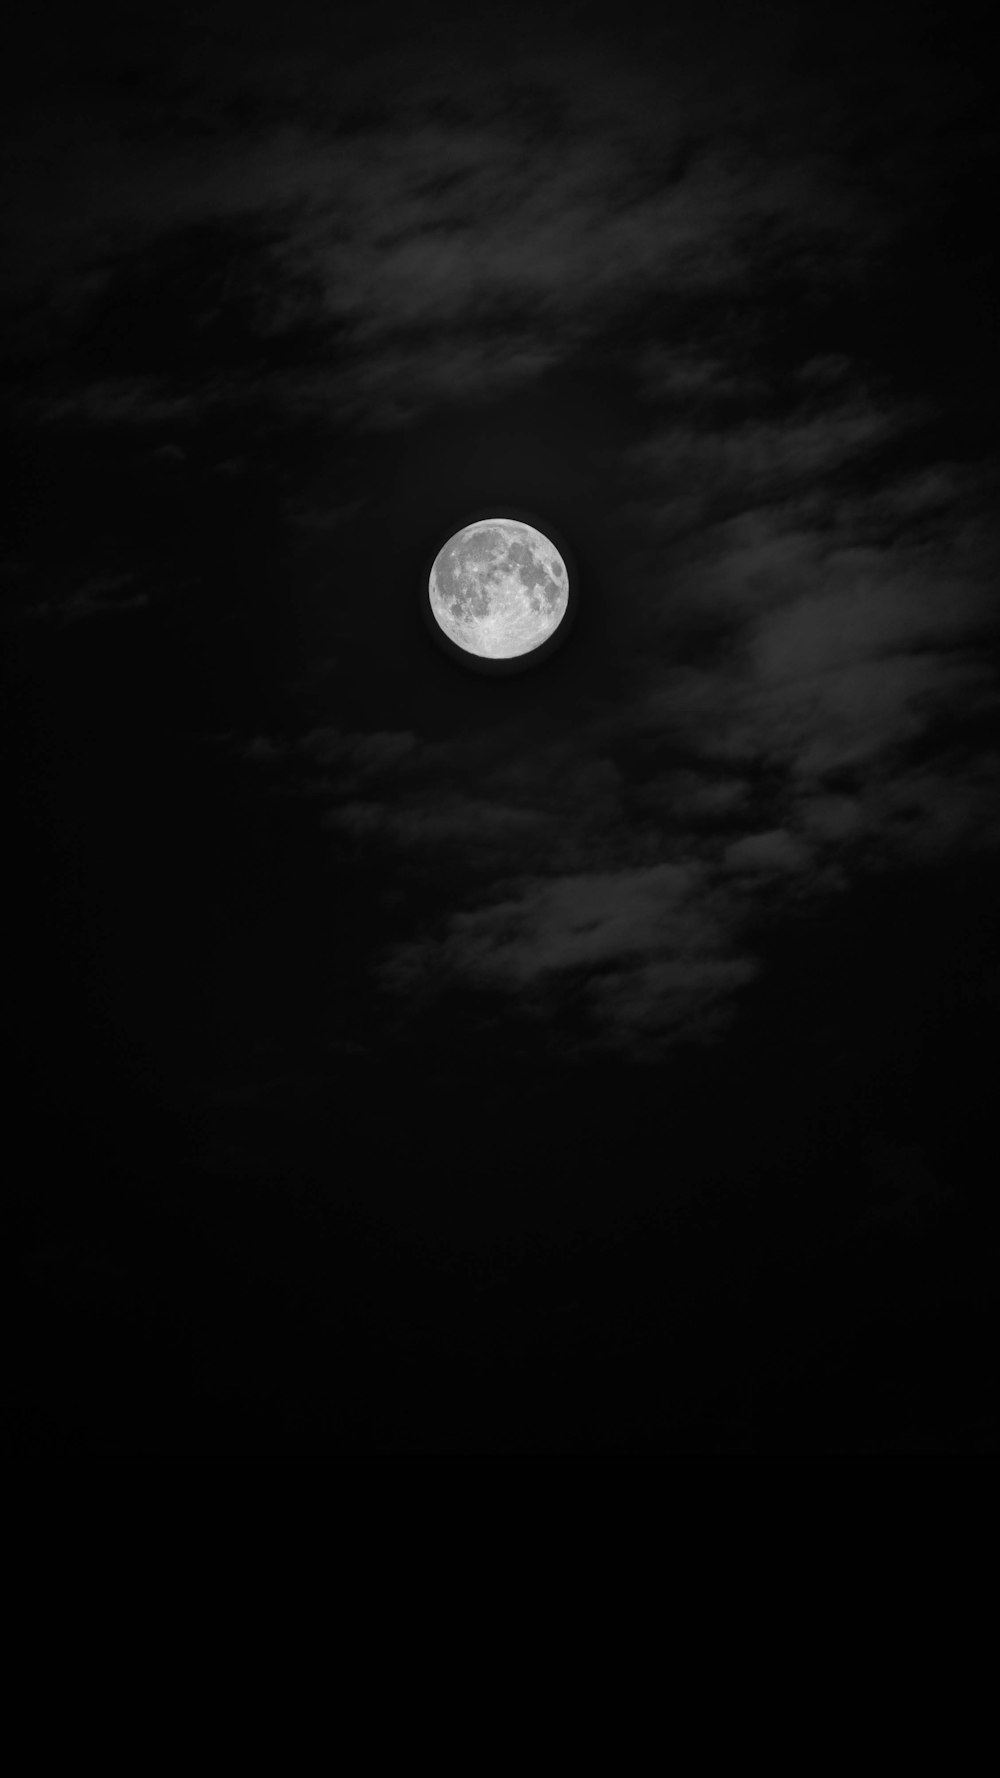 회색조 사진으로 본 보름달